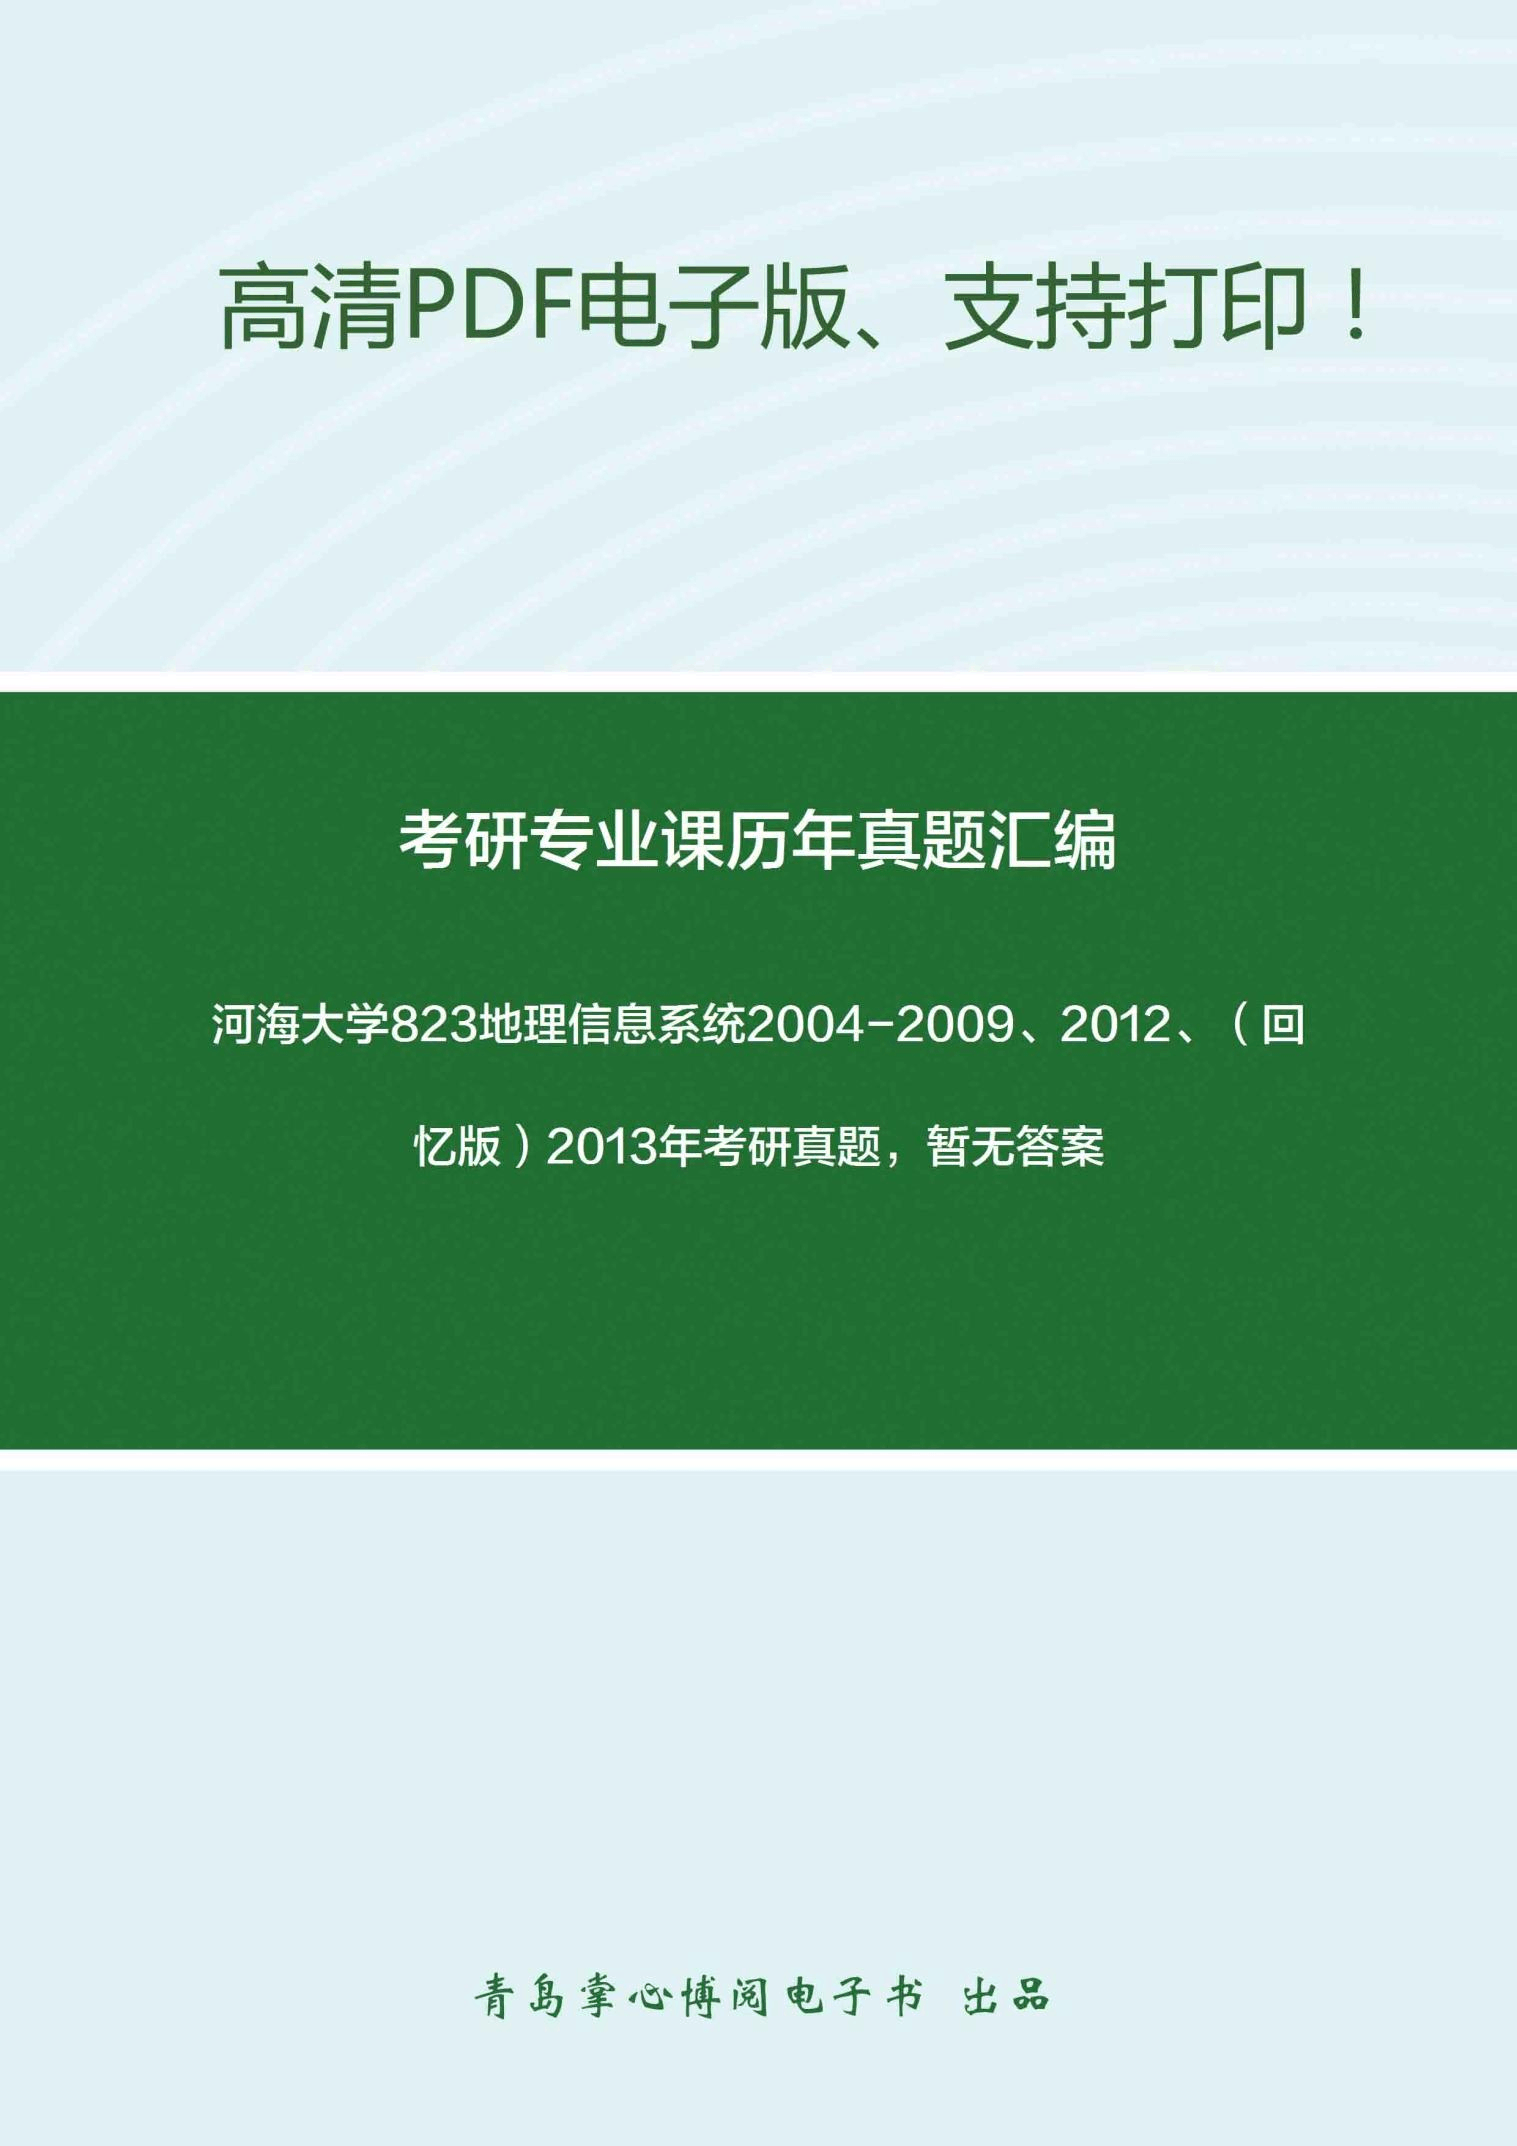 河海大学823地理信息系统2004-2009、2012、(回忆版)2013年考研真题,暂无答案_8